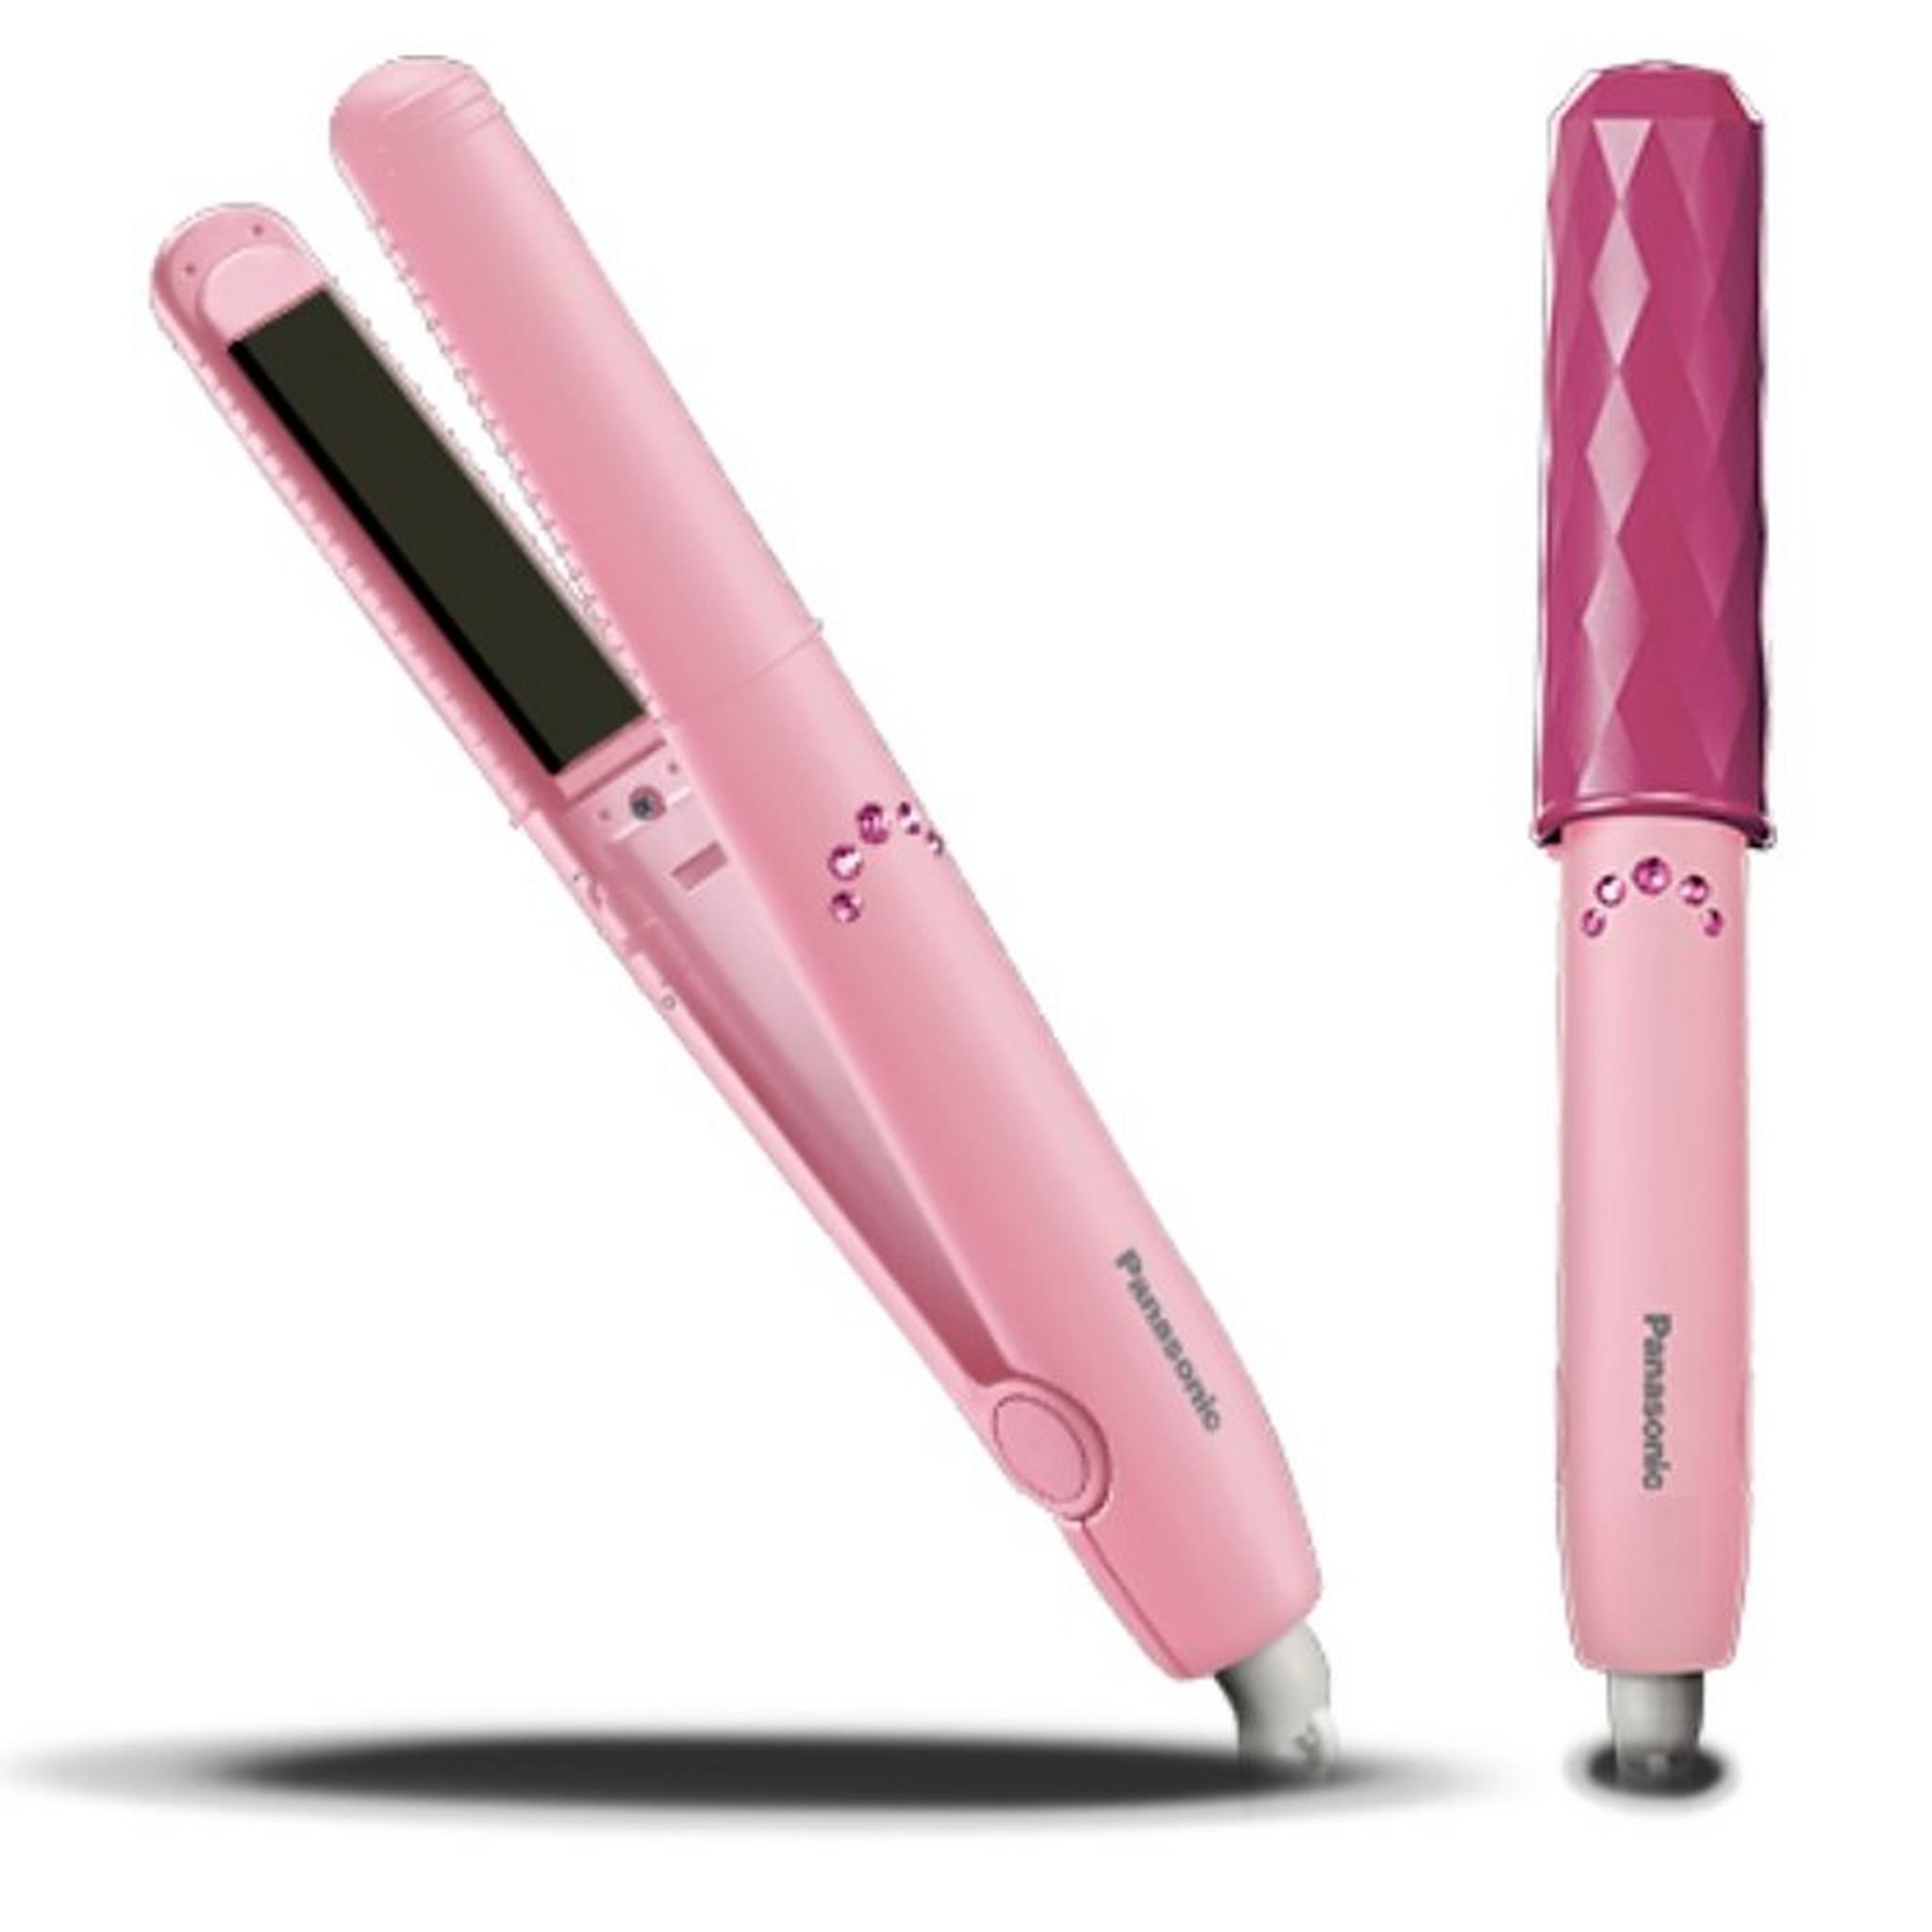 Panasonic Hair Straightener - Pink